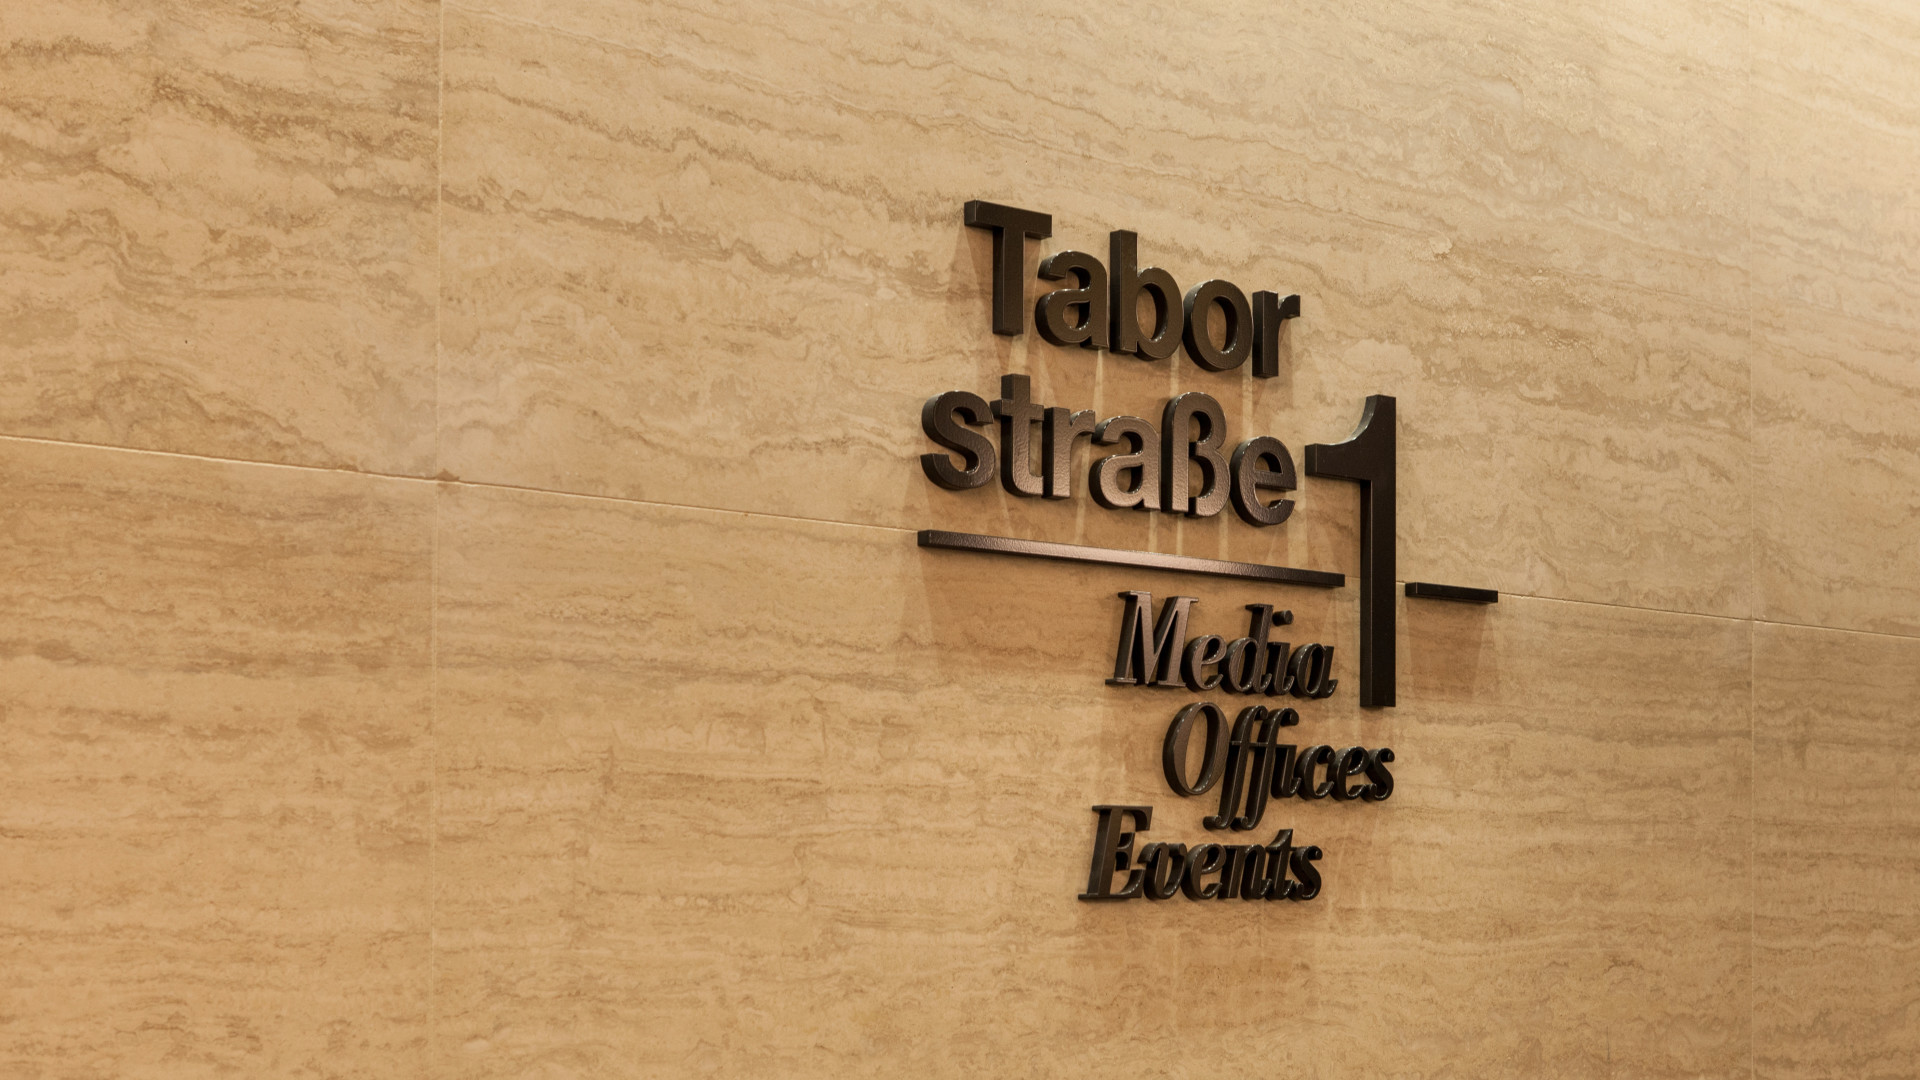 Logo auf Marmorwand angebracht - schwarzer Schriftzug mit Trennstrich: Taborstraße 1, Media, Offices, Events